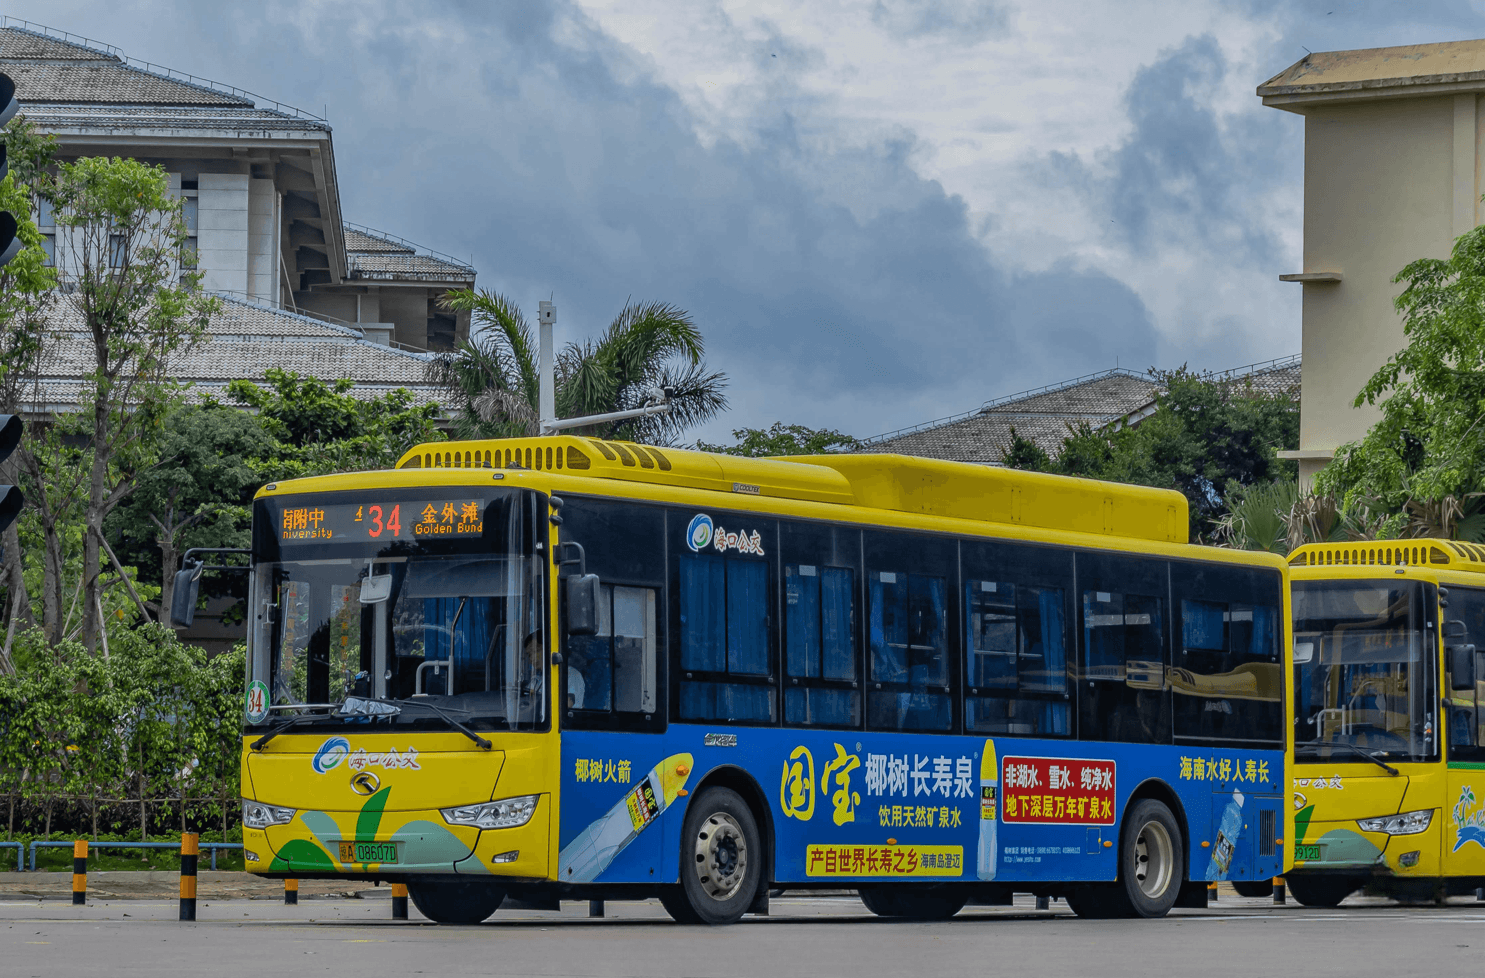 双层旅游巴士|资源-元素谷(OSOGOO)